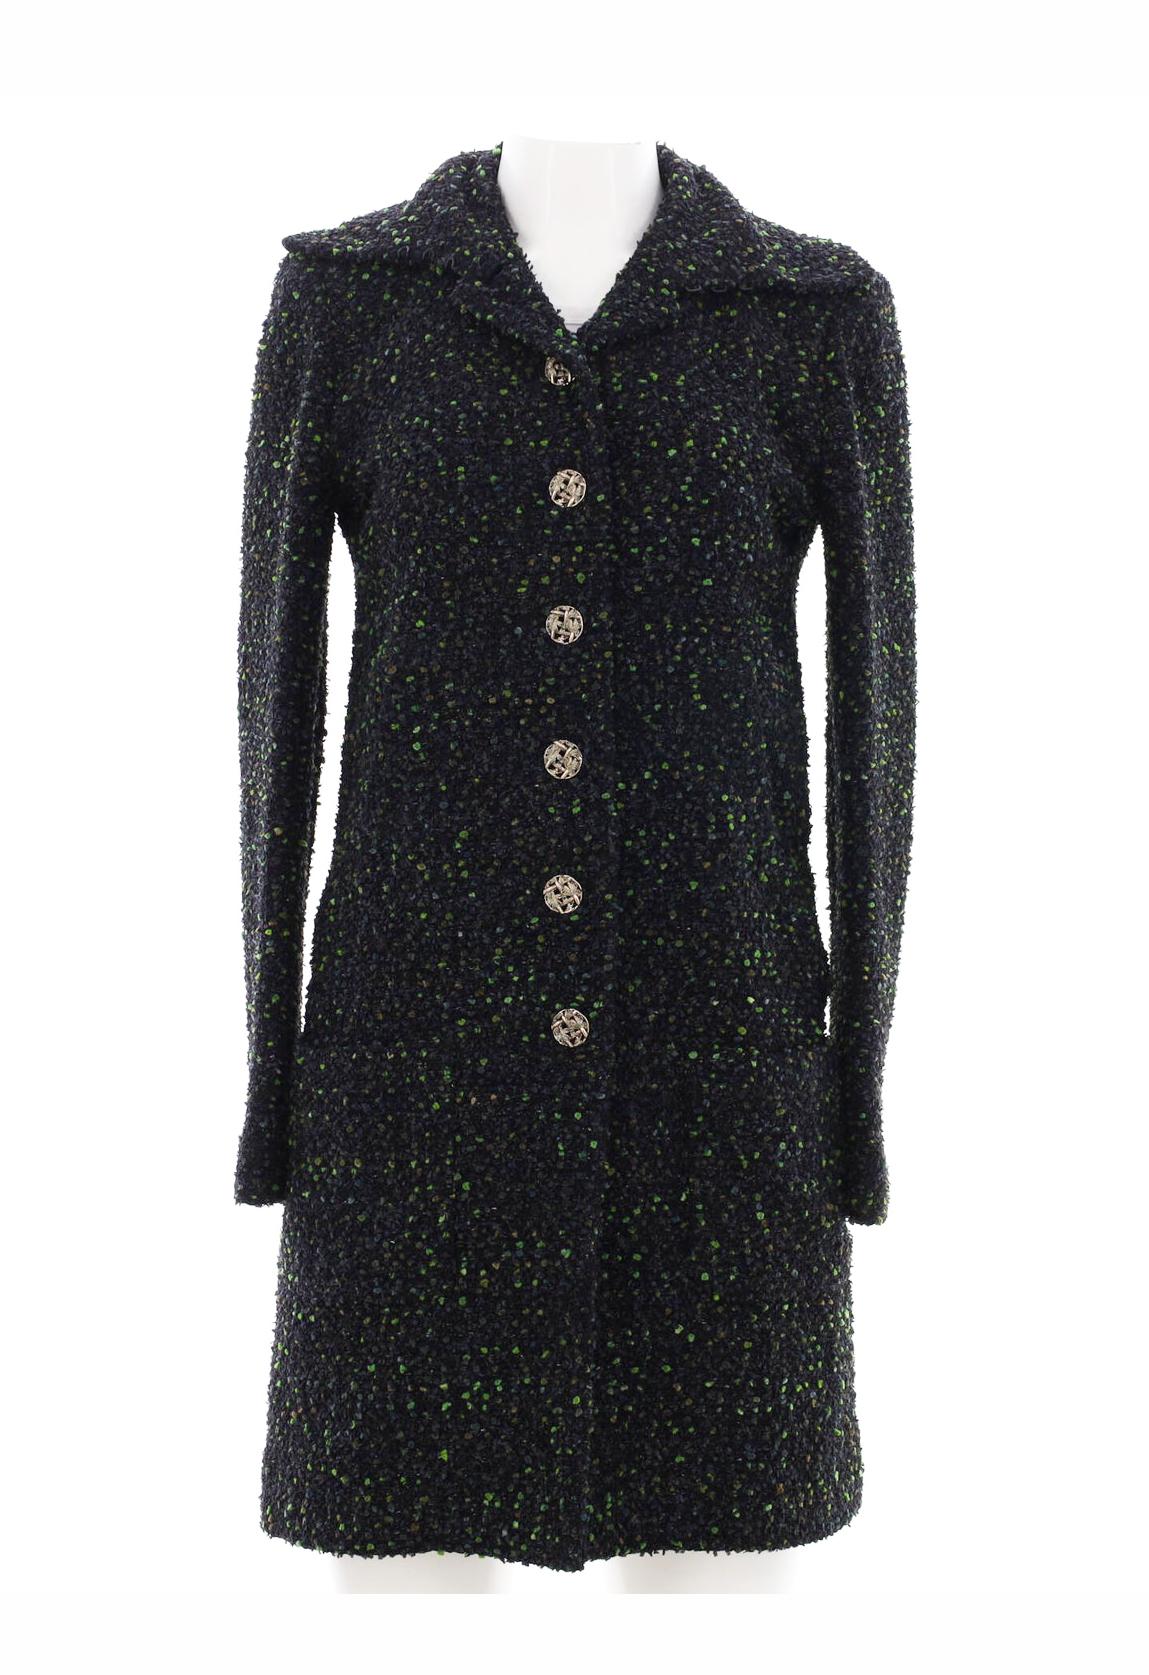 Nouveau magnifique manteau en tweed Lesage Chanel du défilé de la Collection ''AUTUMN FOREST'' de Karl Lagerfeld. 
Prix boutique supérieur à 9 000
- couleurs et détails comme un chef-d'œuvre
- CC logo siver tone buttons
- doublure en soie ton sur